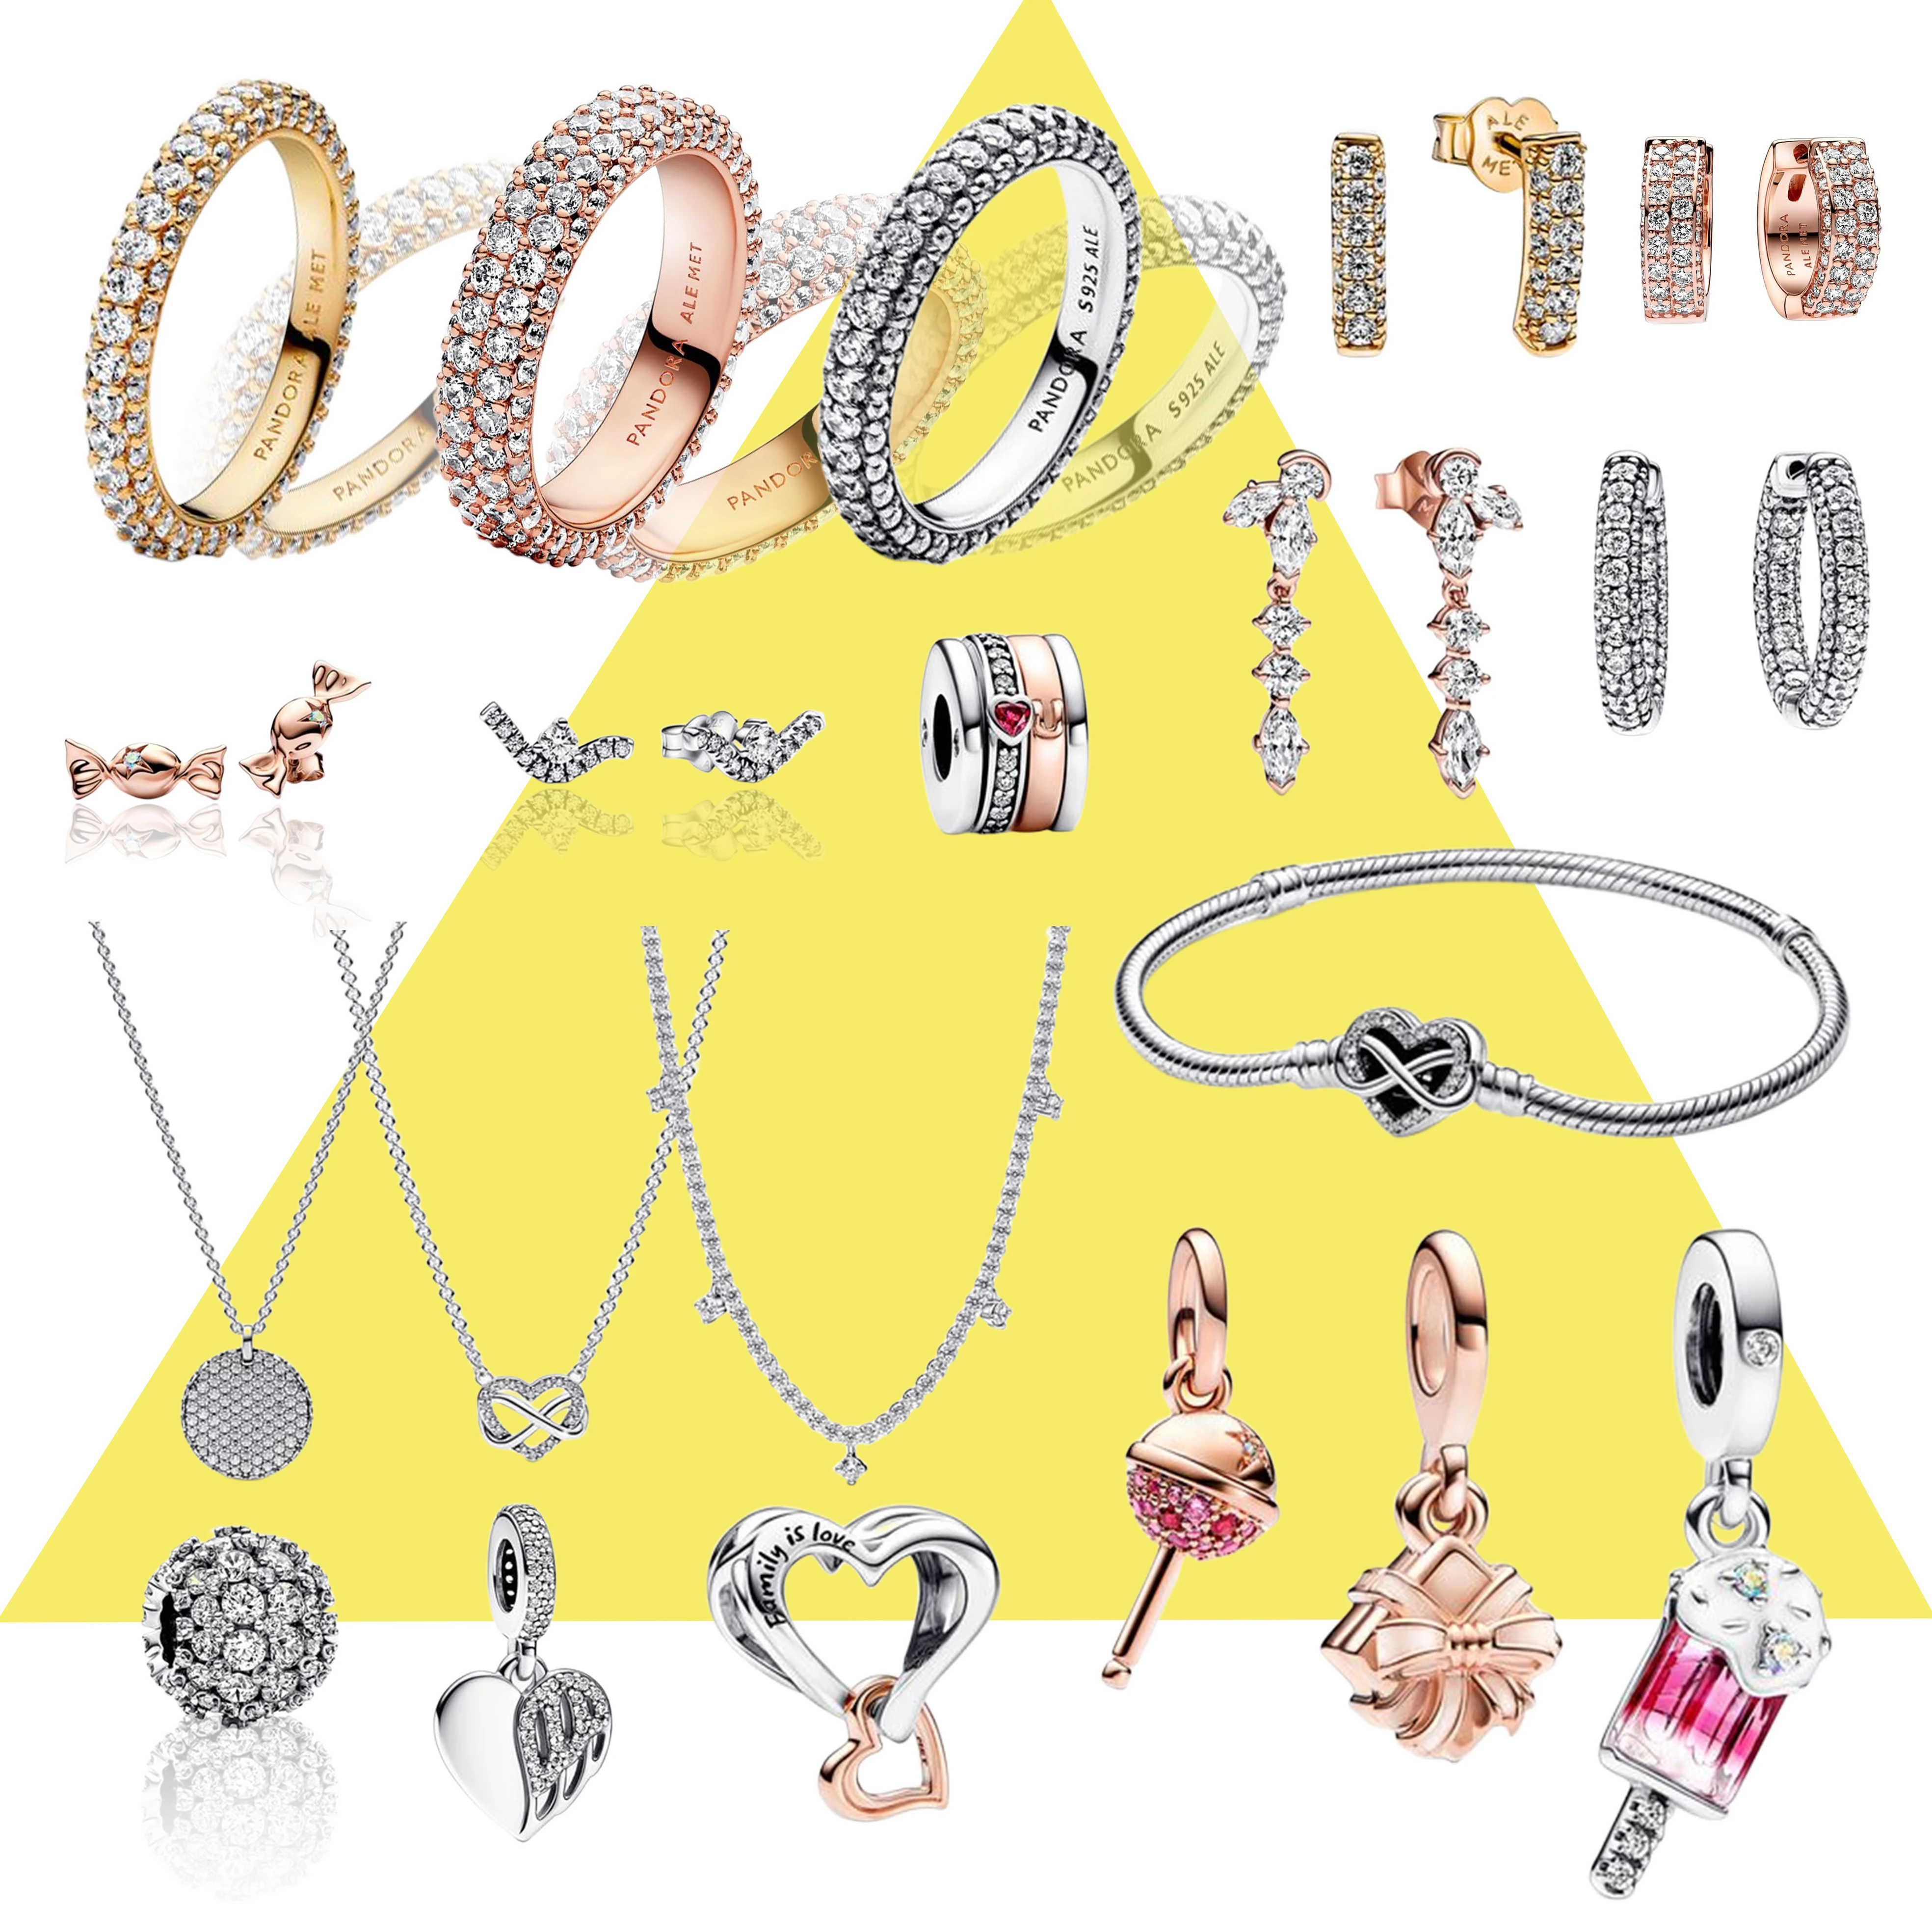 

2023 оригинальная серия со сверкающими бриллиантами с логотипом, очаровательные ювелирные изделия из стерлингового серебра 925 пробы, популярная серия браслетов Pandora, ожерелье, серьги